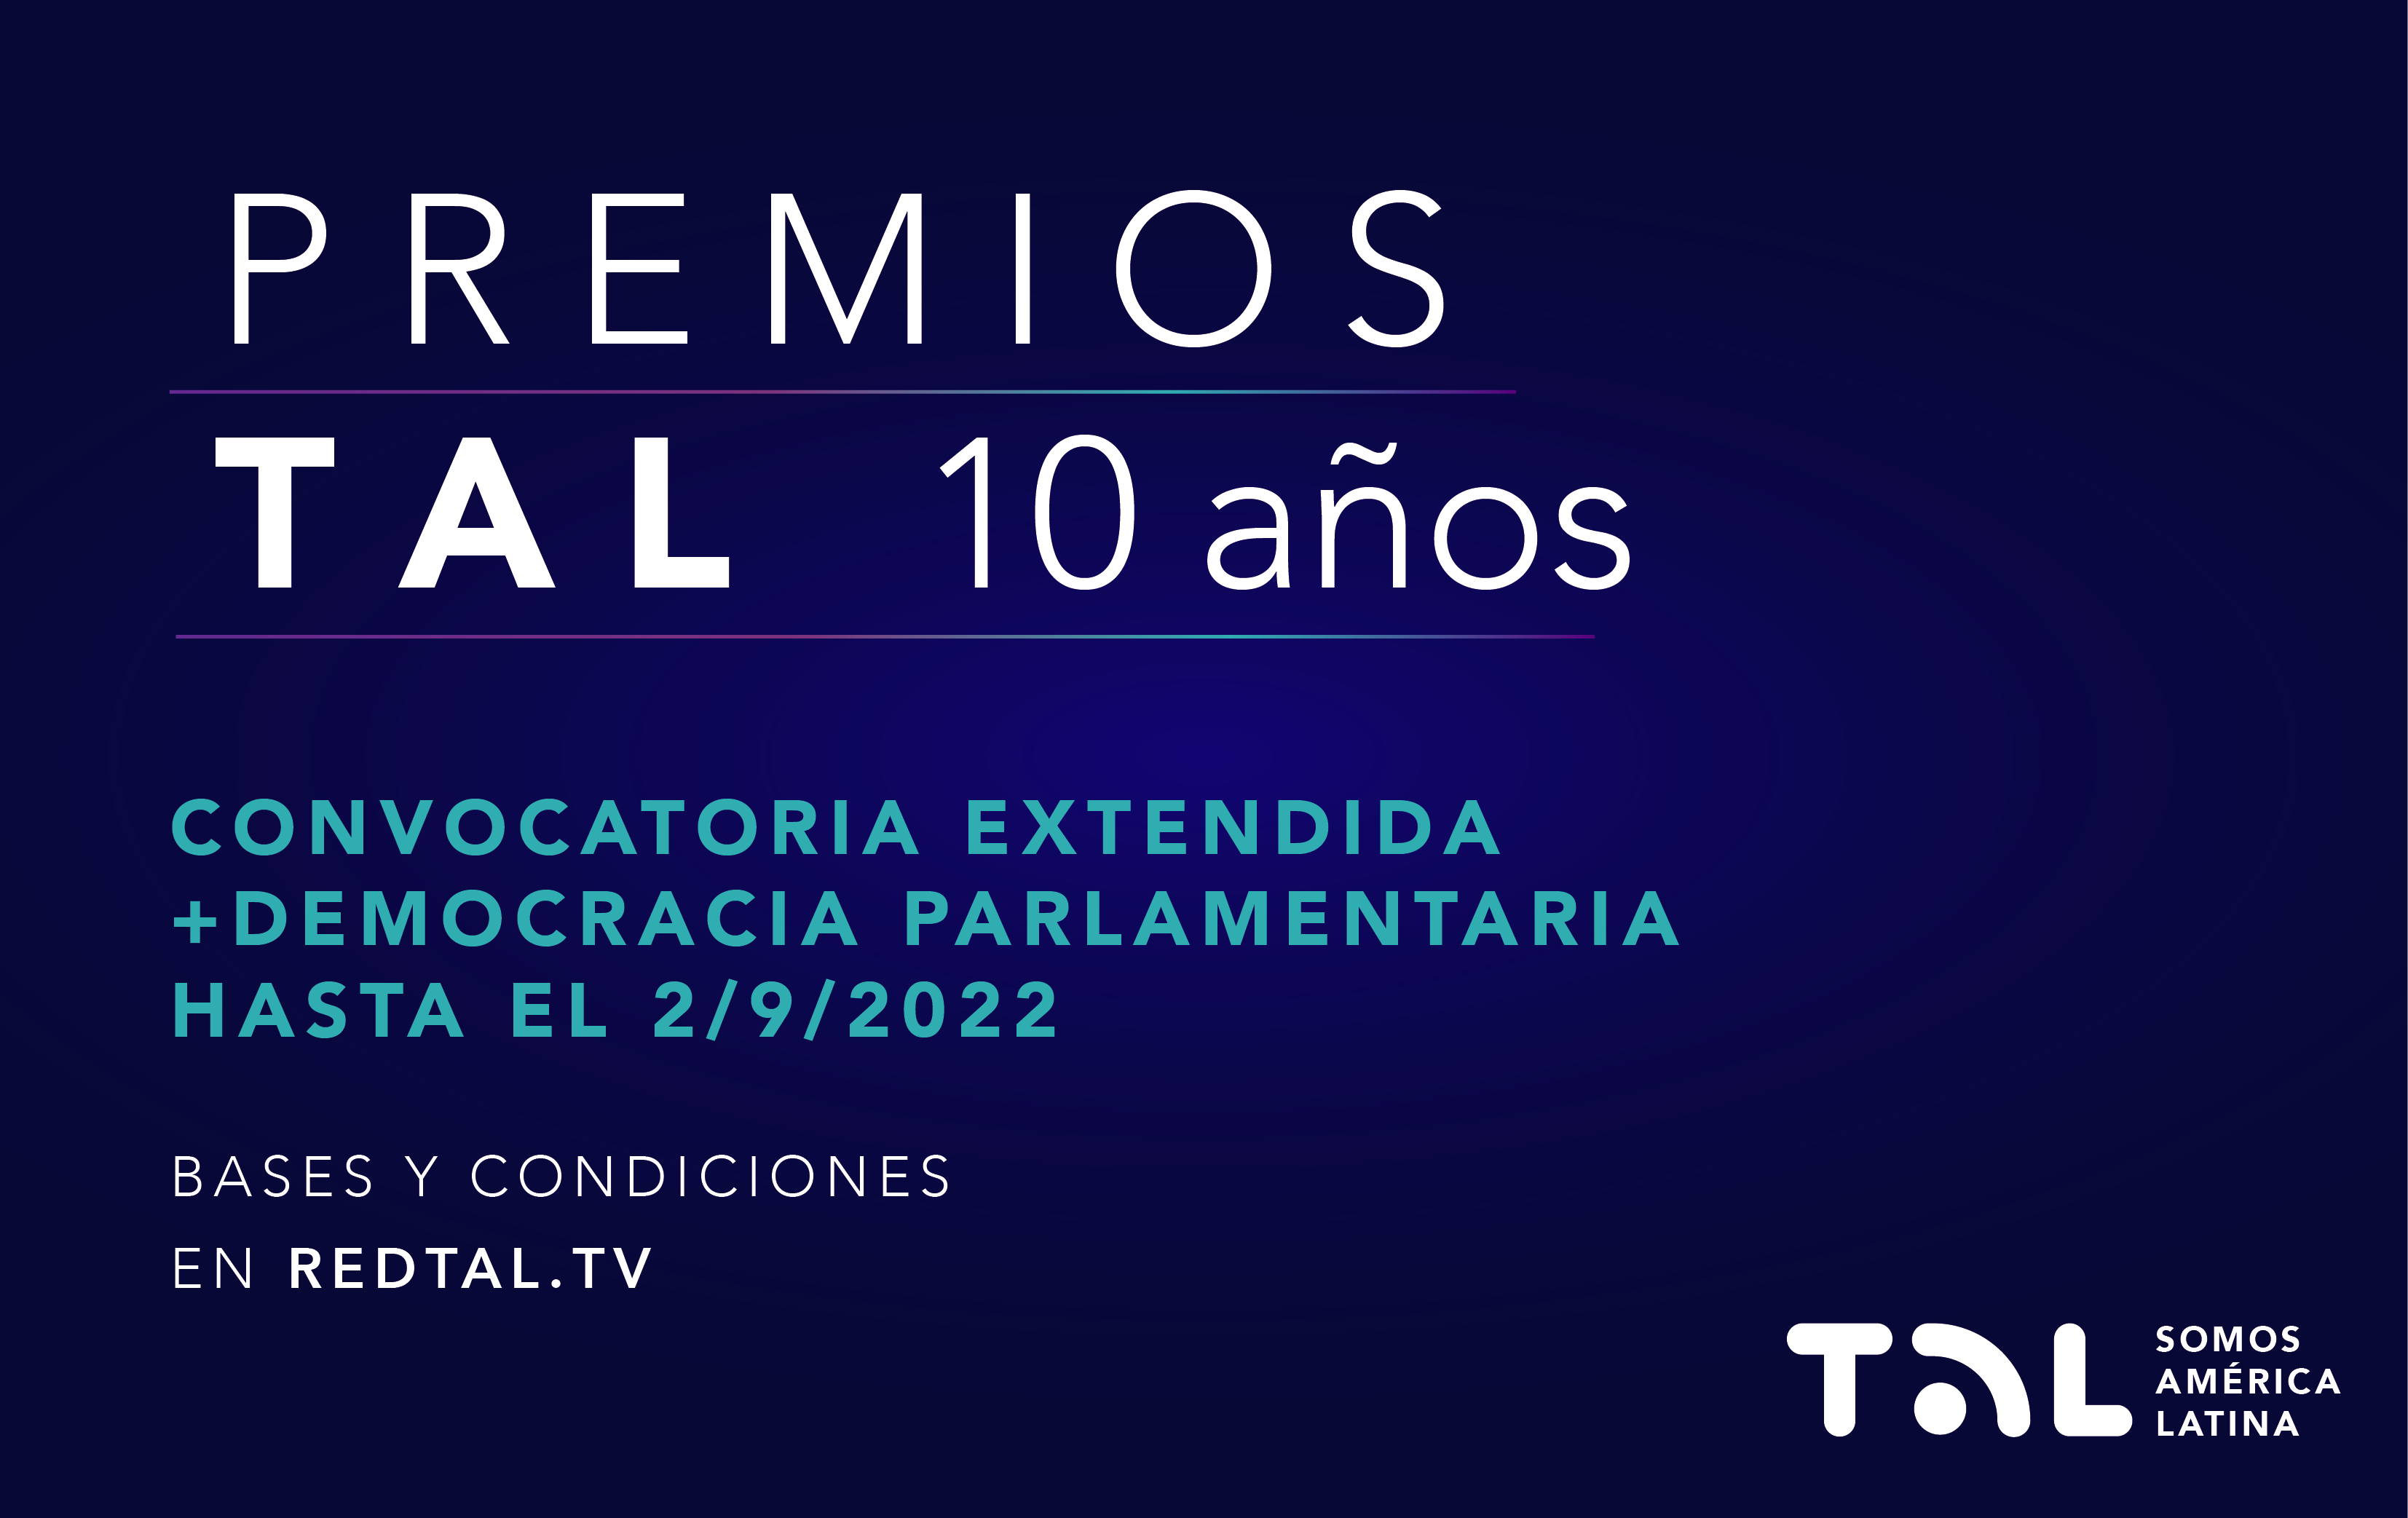 Se abre la convocatoria del Premio Especial: +Democracia Parlamentaria de los Premios TAL 2022